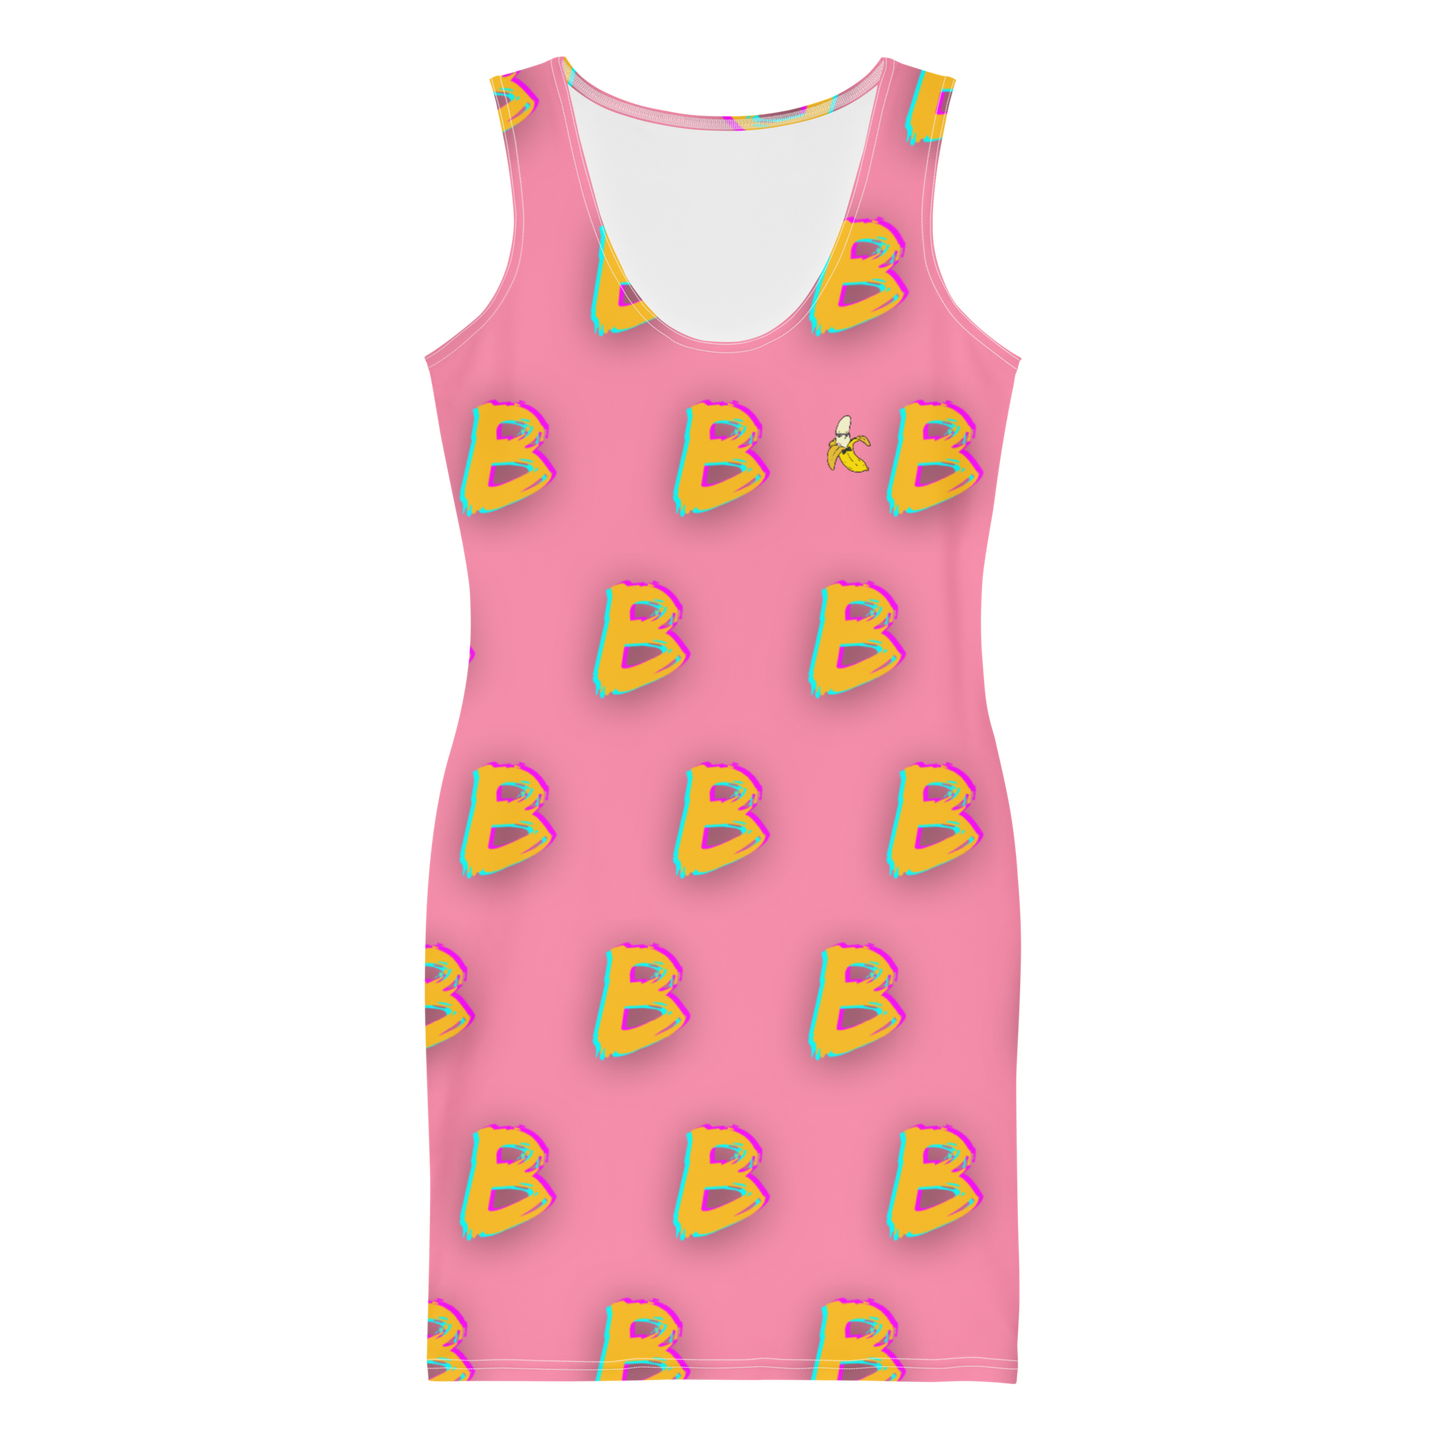 B B B B B B B Dress